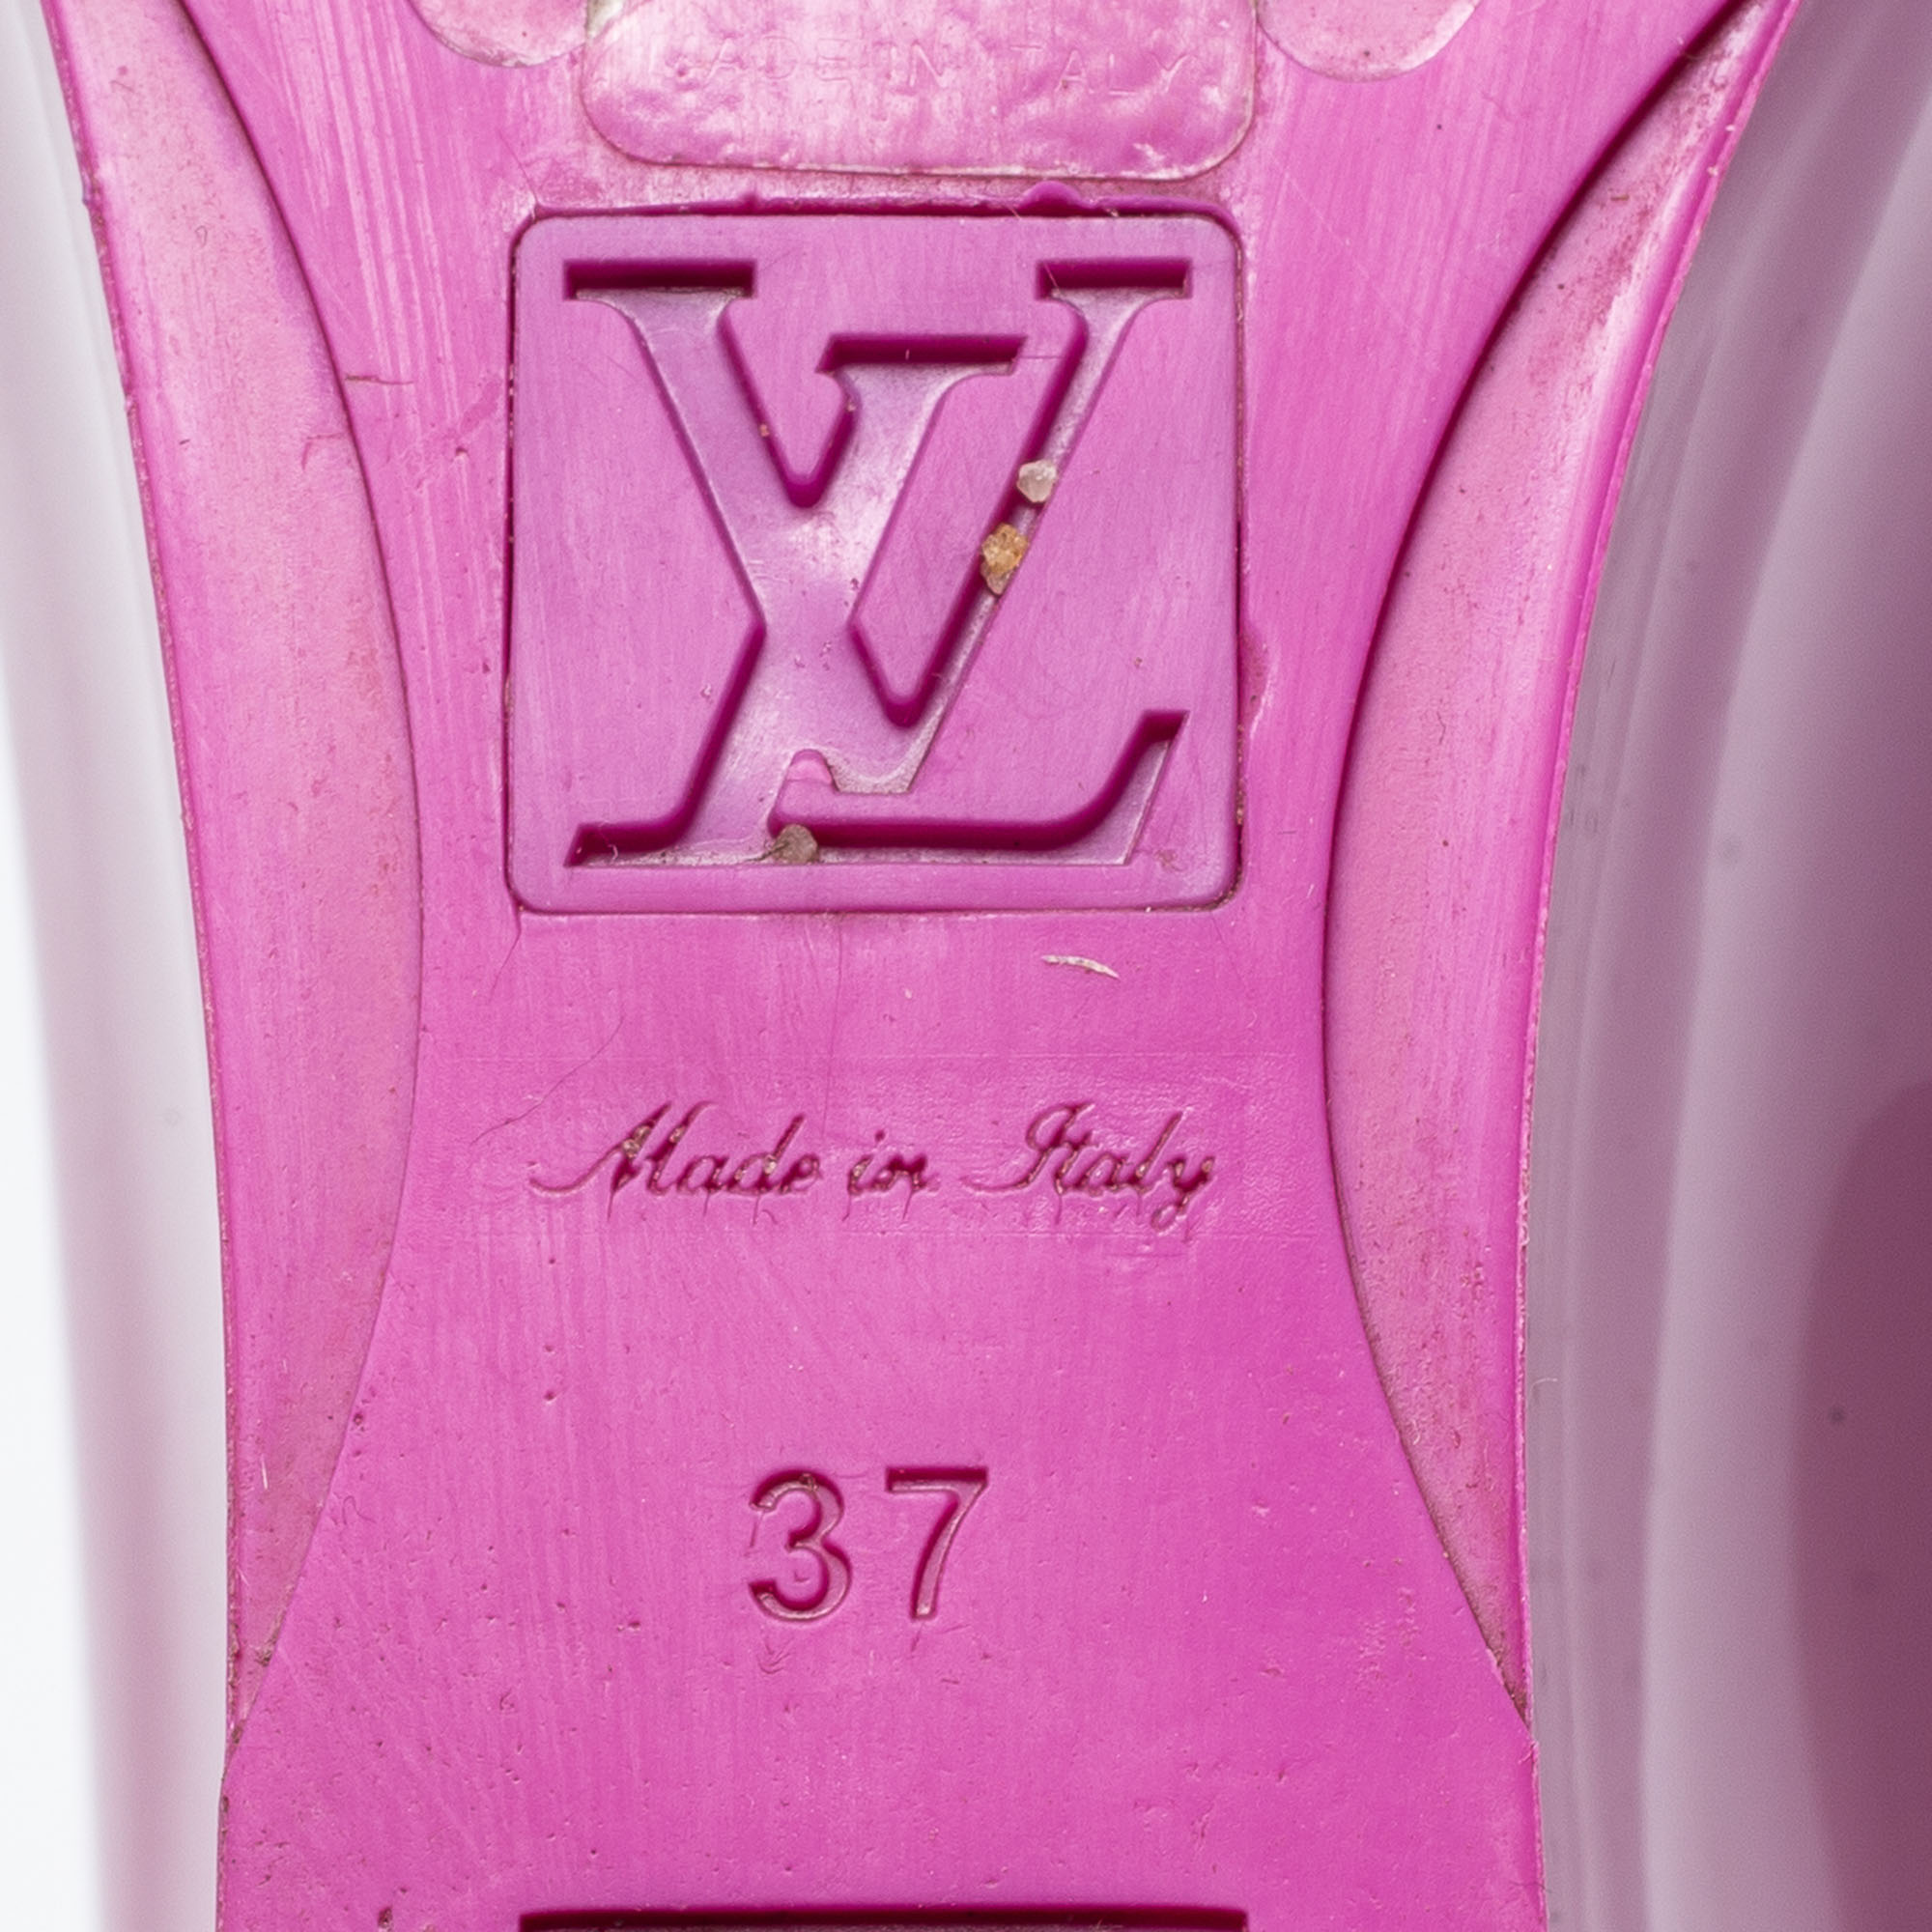 Louis Vuitton Purple Rubber Ankle-Strap Wedge Sandals Size 37